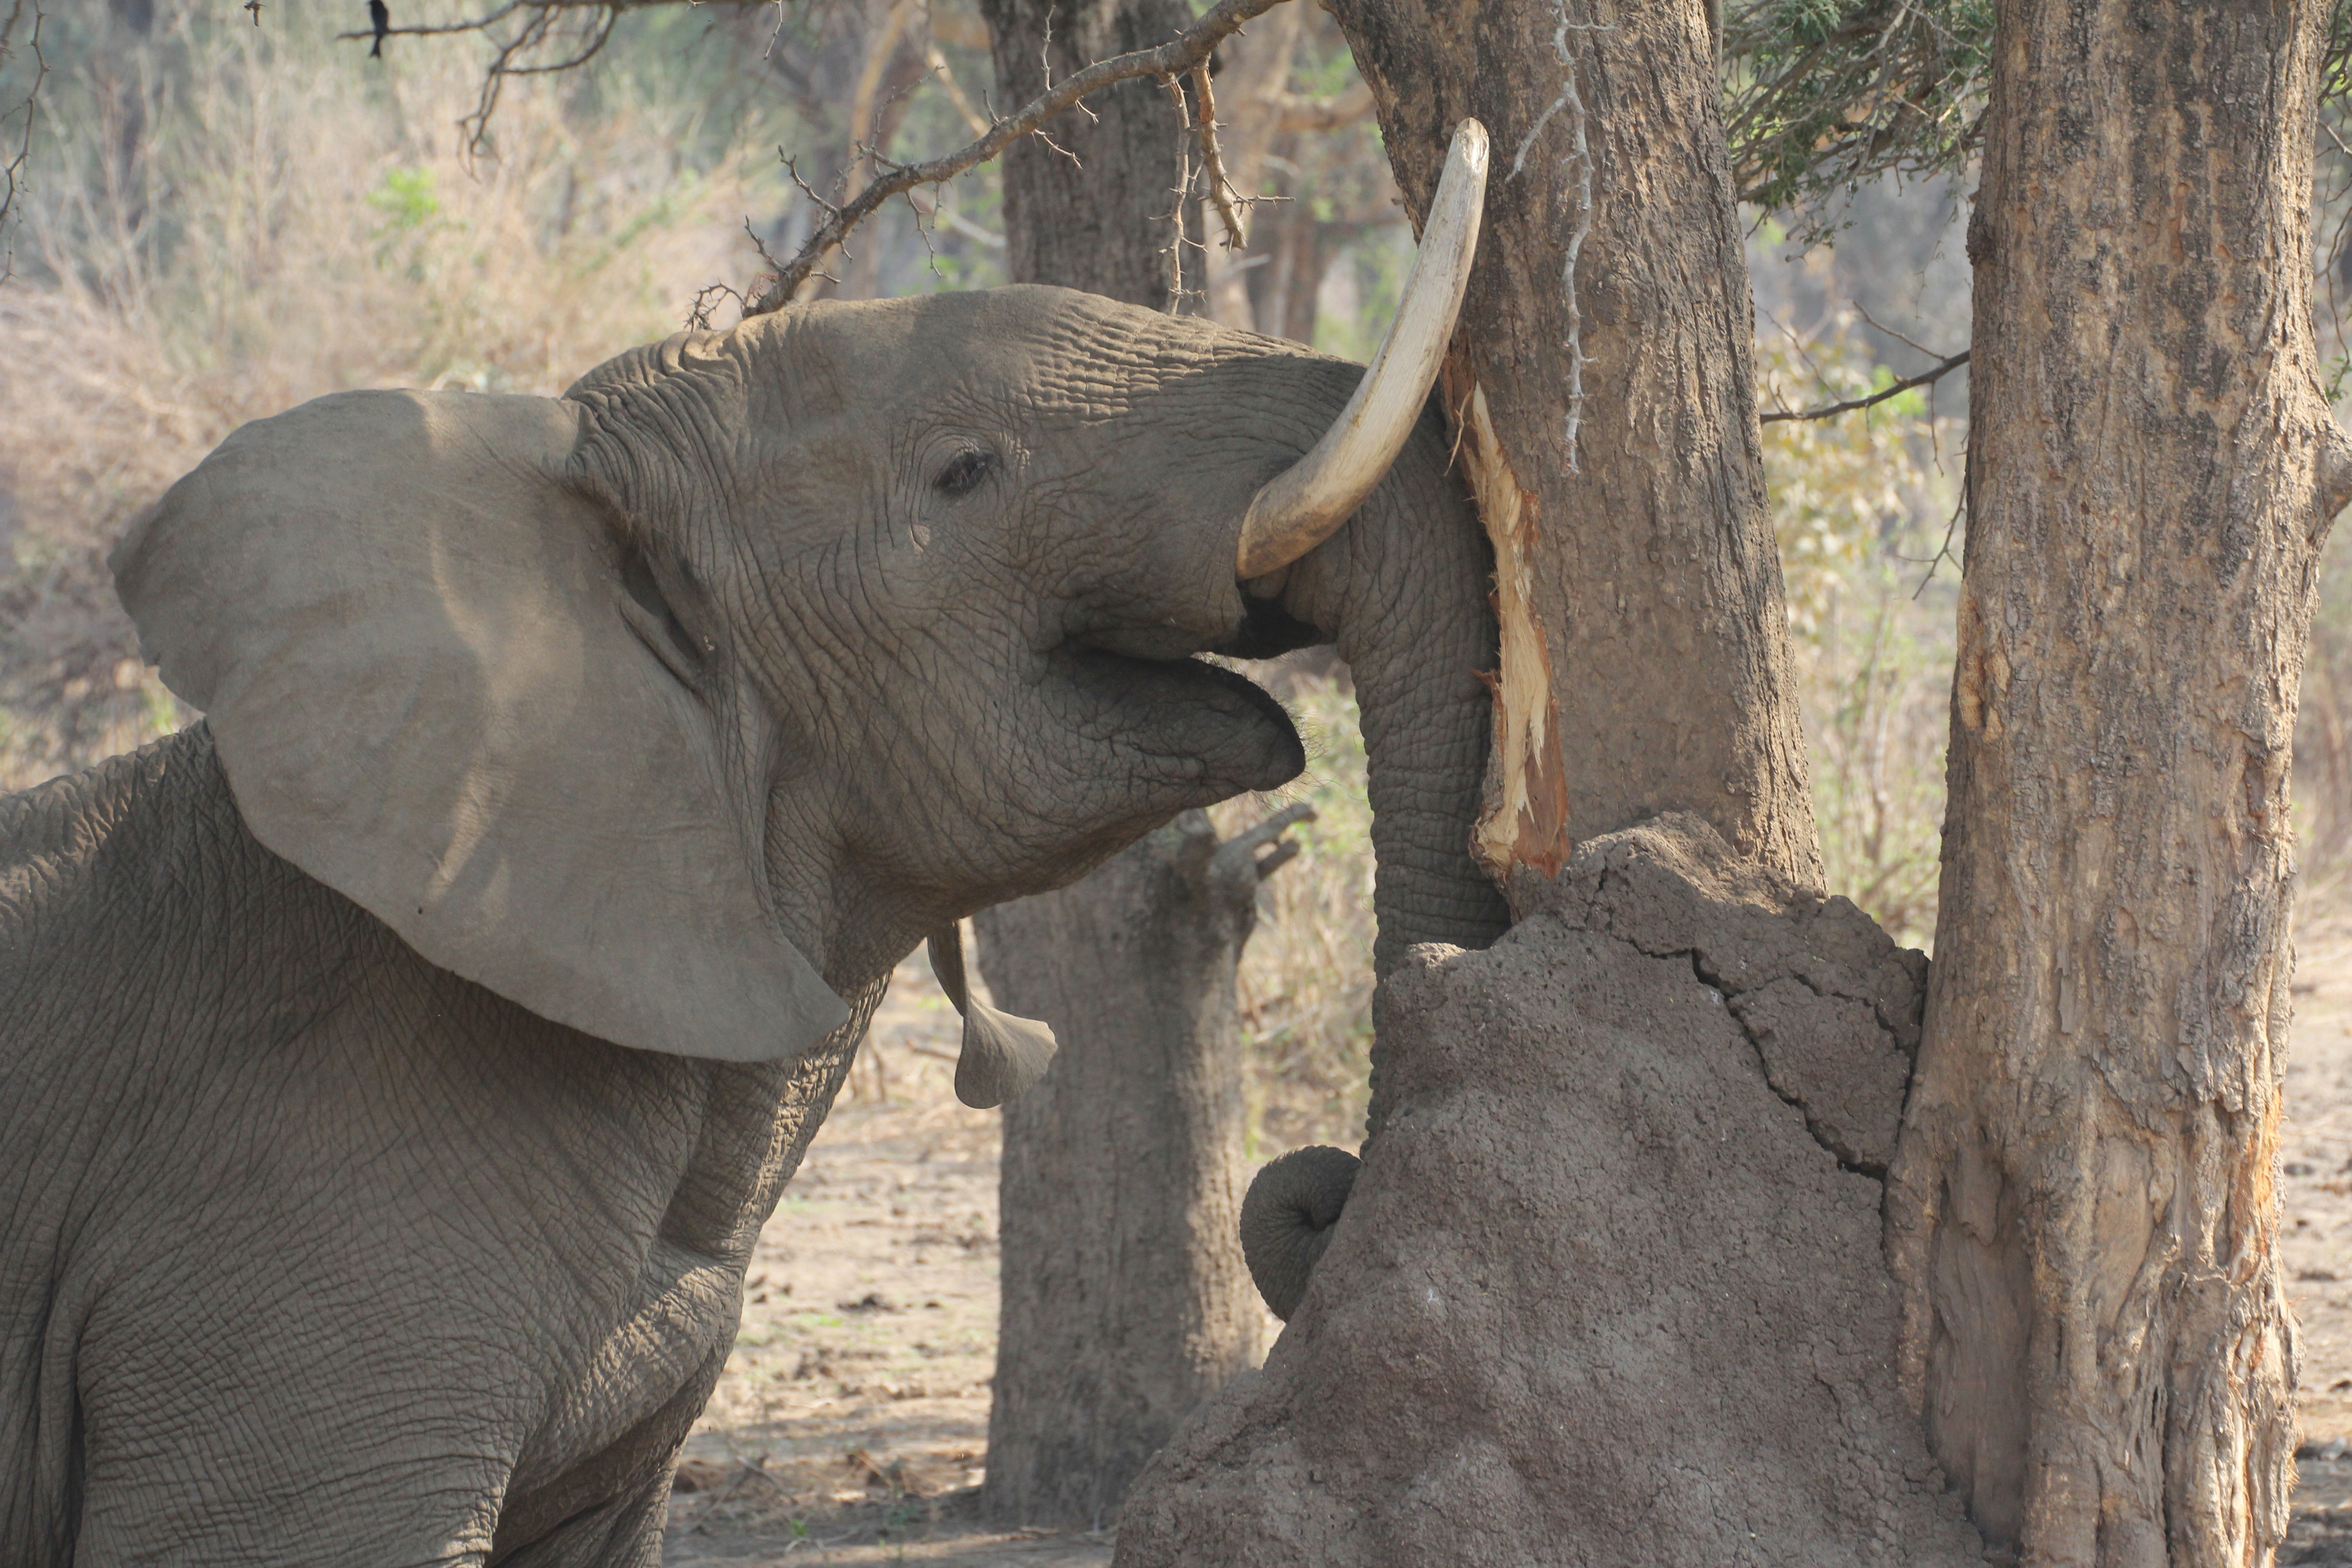 Elephant rubbing his tasks at aaElephant rubbing his tasks at a tree in Lower Zambesi Nationalpark  tree in Lower Zambesi Nationalpark | Ein Elefant reibt seine Stosszähne an einem Baum.